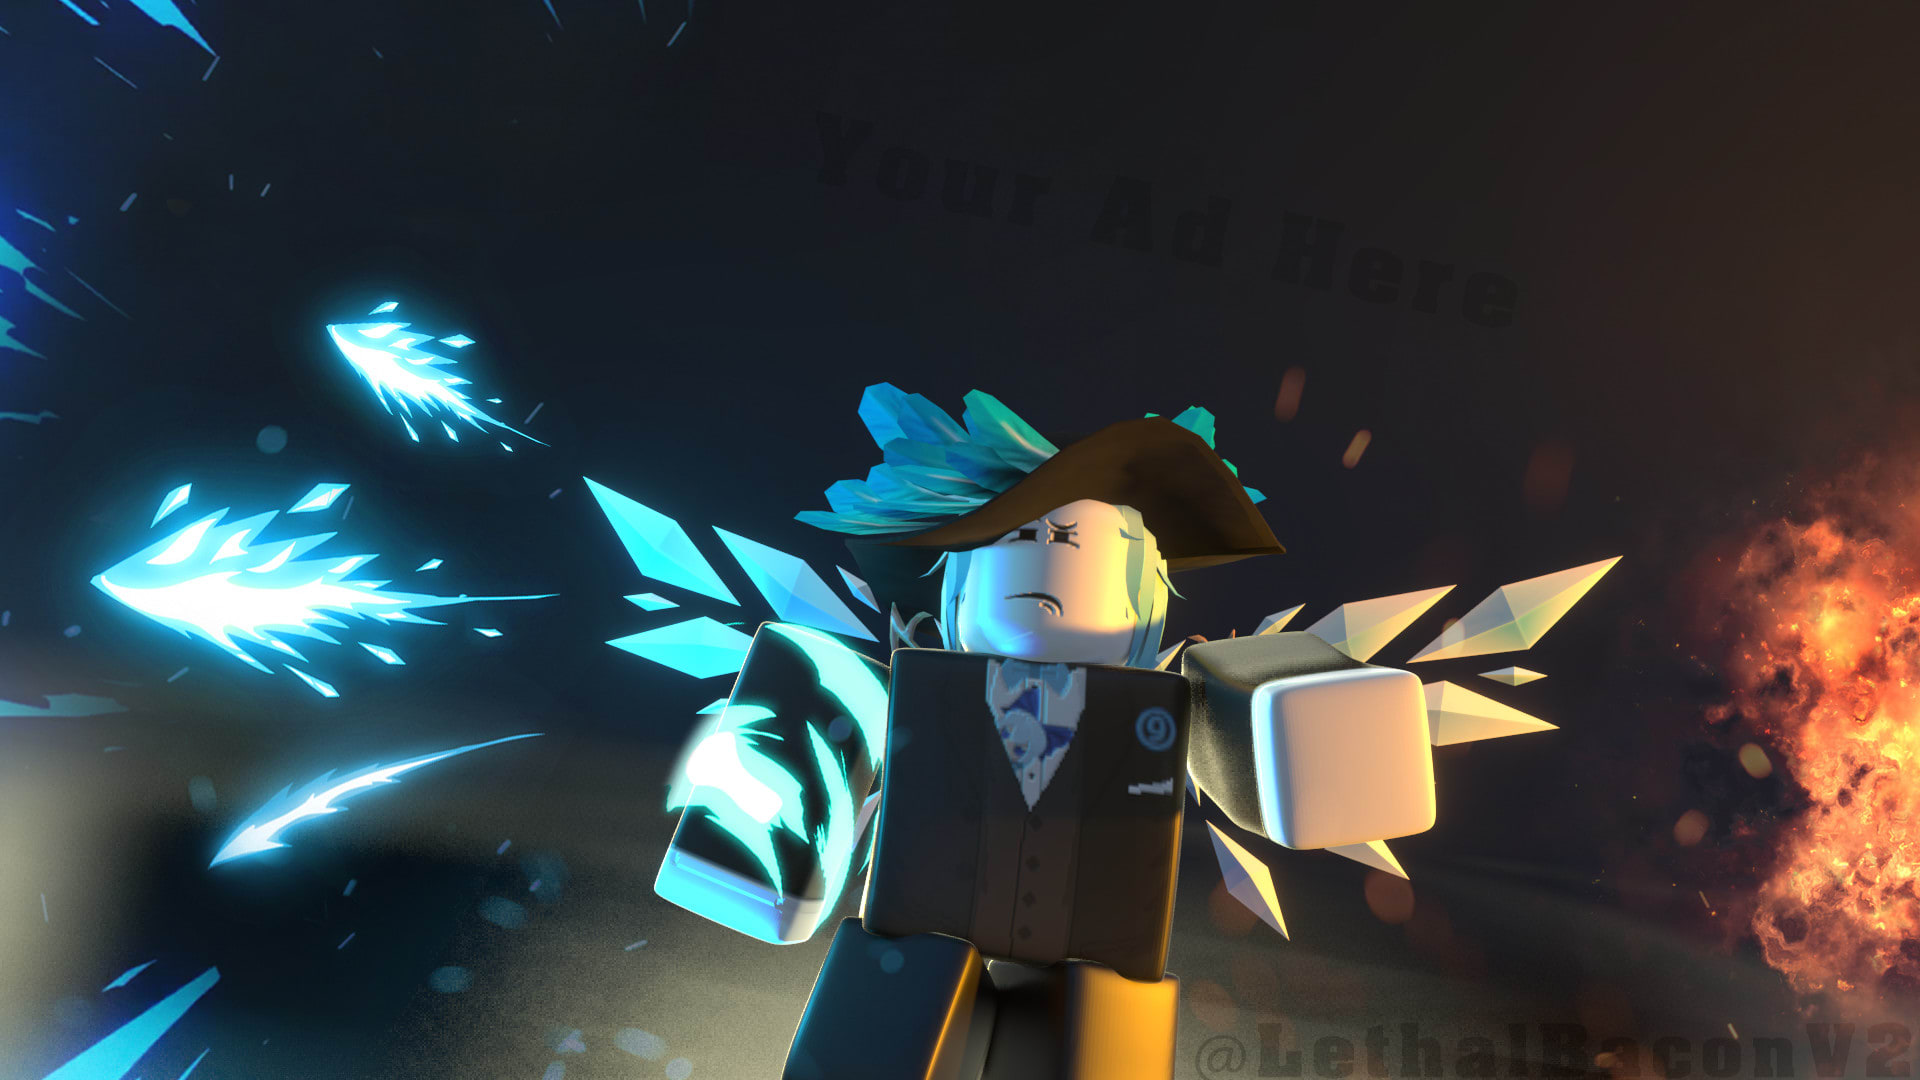 Roblox đã nâng cấp công nghệ 3D render avatar trên một tầm cao mới! Những chi tiết tinh tế, chân thật của nhân vật trên trò chơi thật sự đáng kinh ngạc. Bạn sẽ có cảm giác như bước vào một thế giới ảo chân thật đầy màu sắc, vui nhộn. Hãy khám phá để có trải nghiệm cực kỳ ấn tượng!